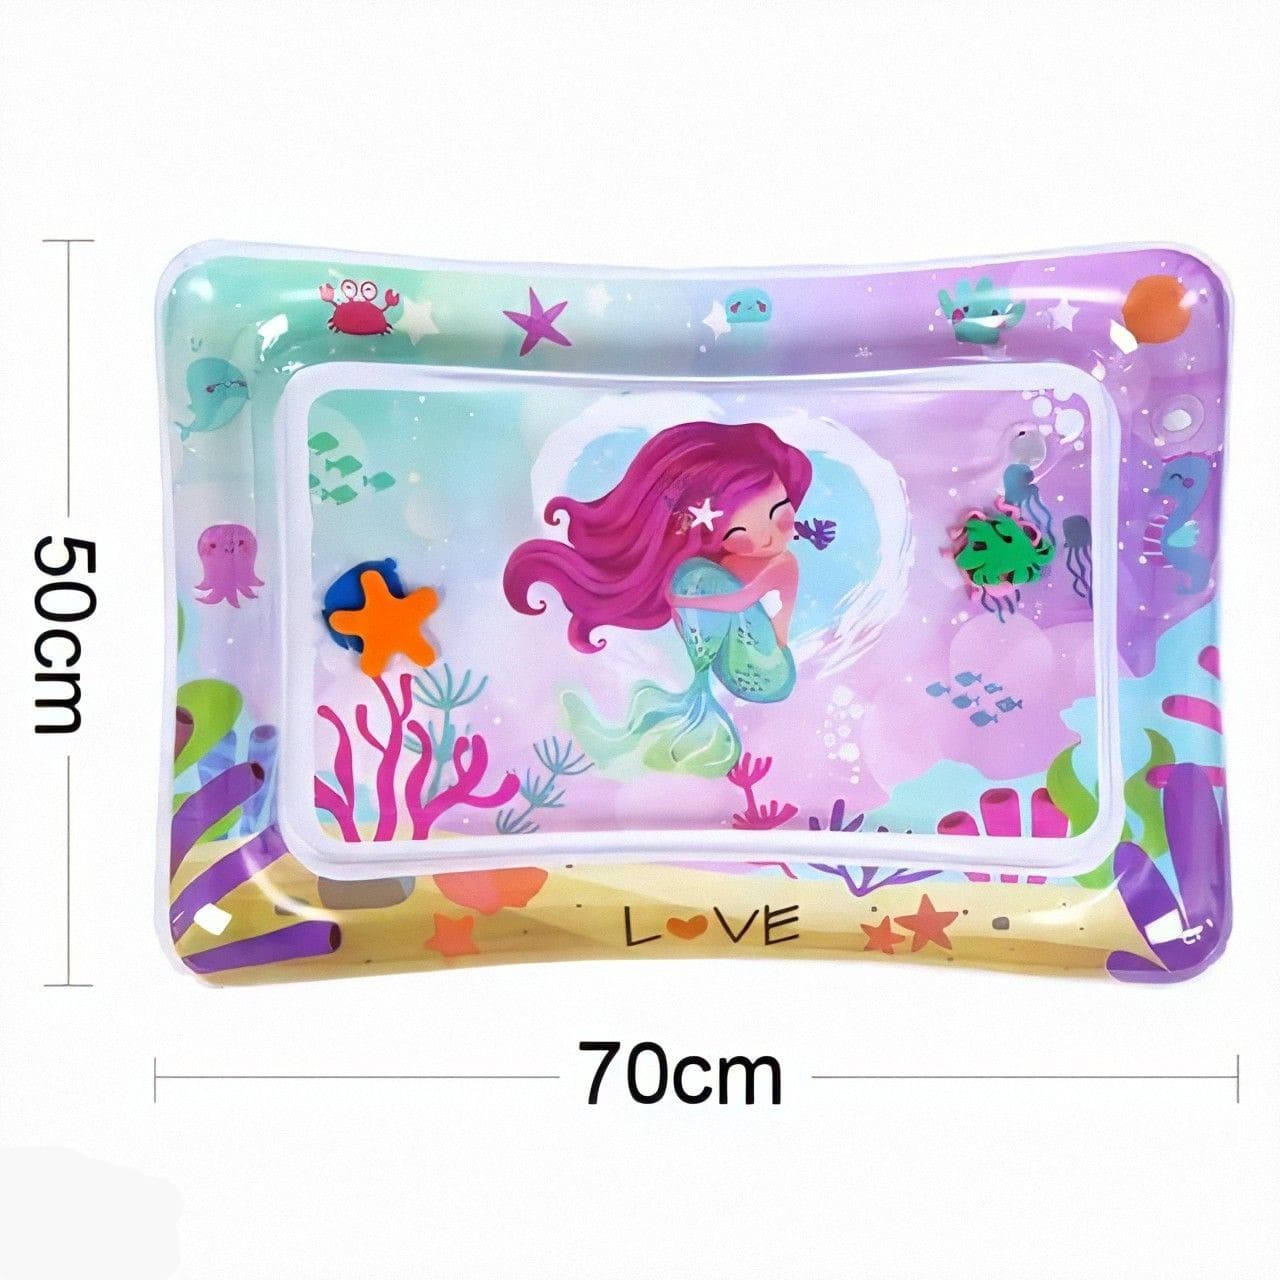 O Brinquedo® - Aquaplaymat™ Tapete Inflável De Água Interativo Para Bebês Aquaplaymat 2